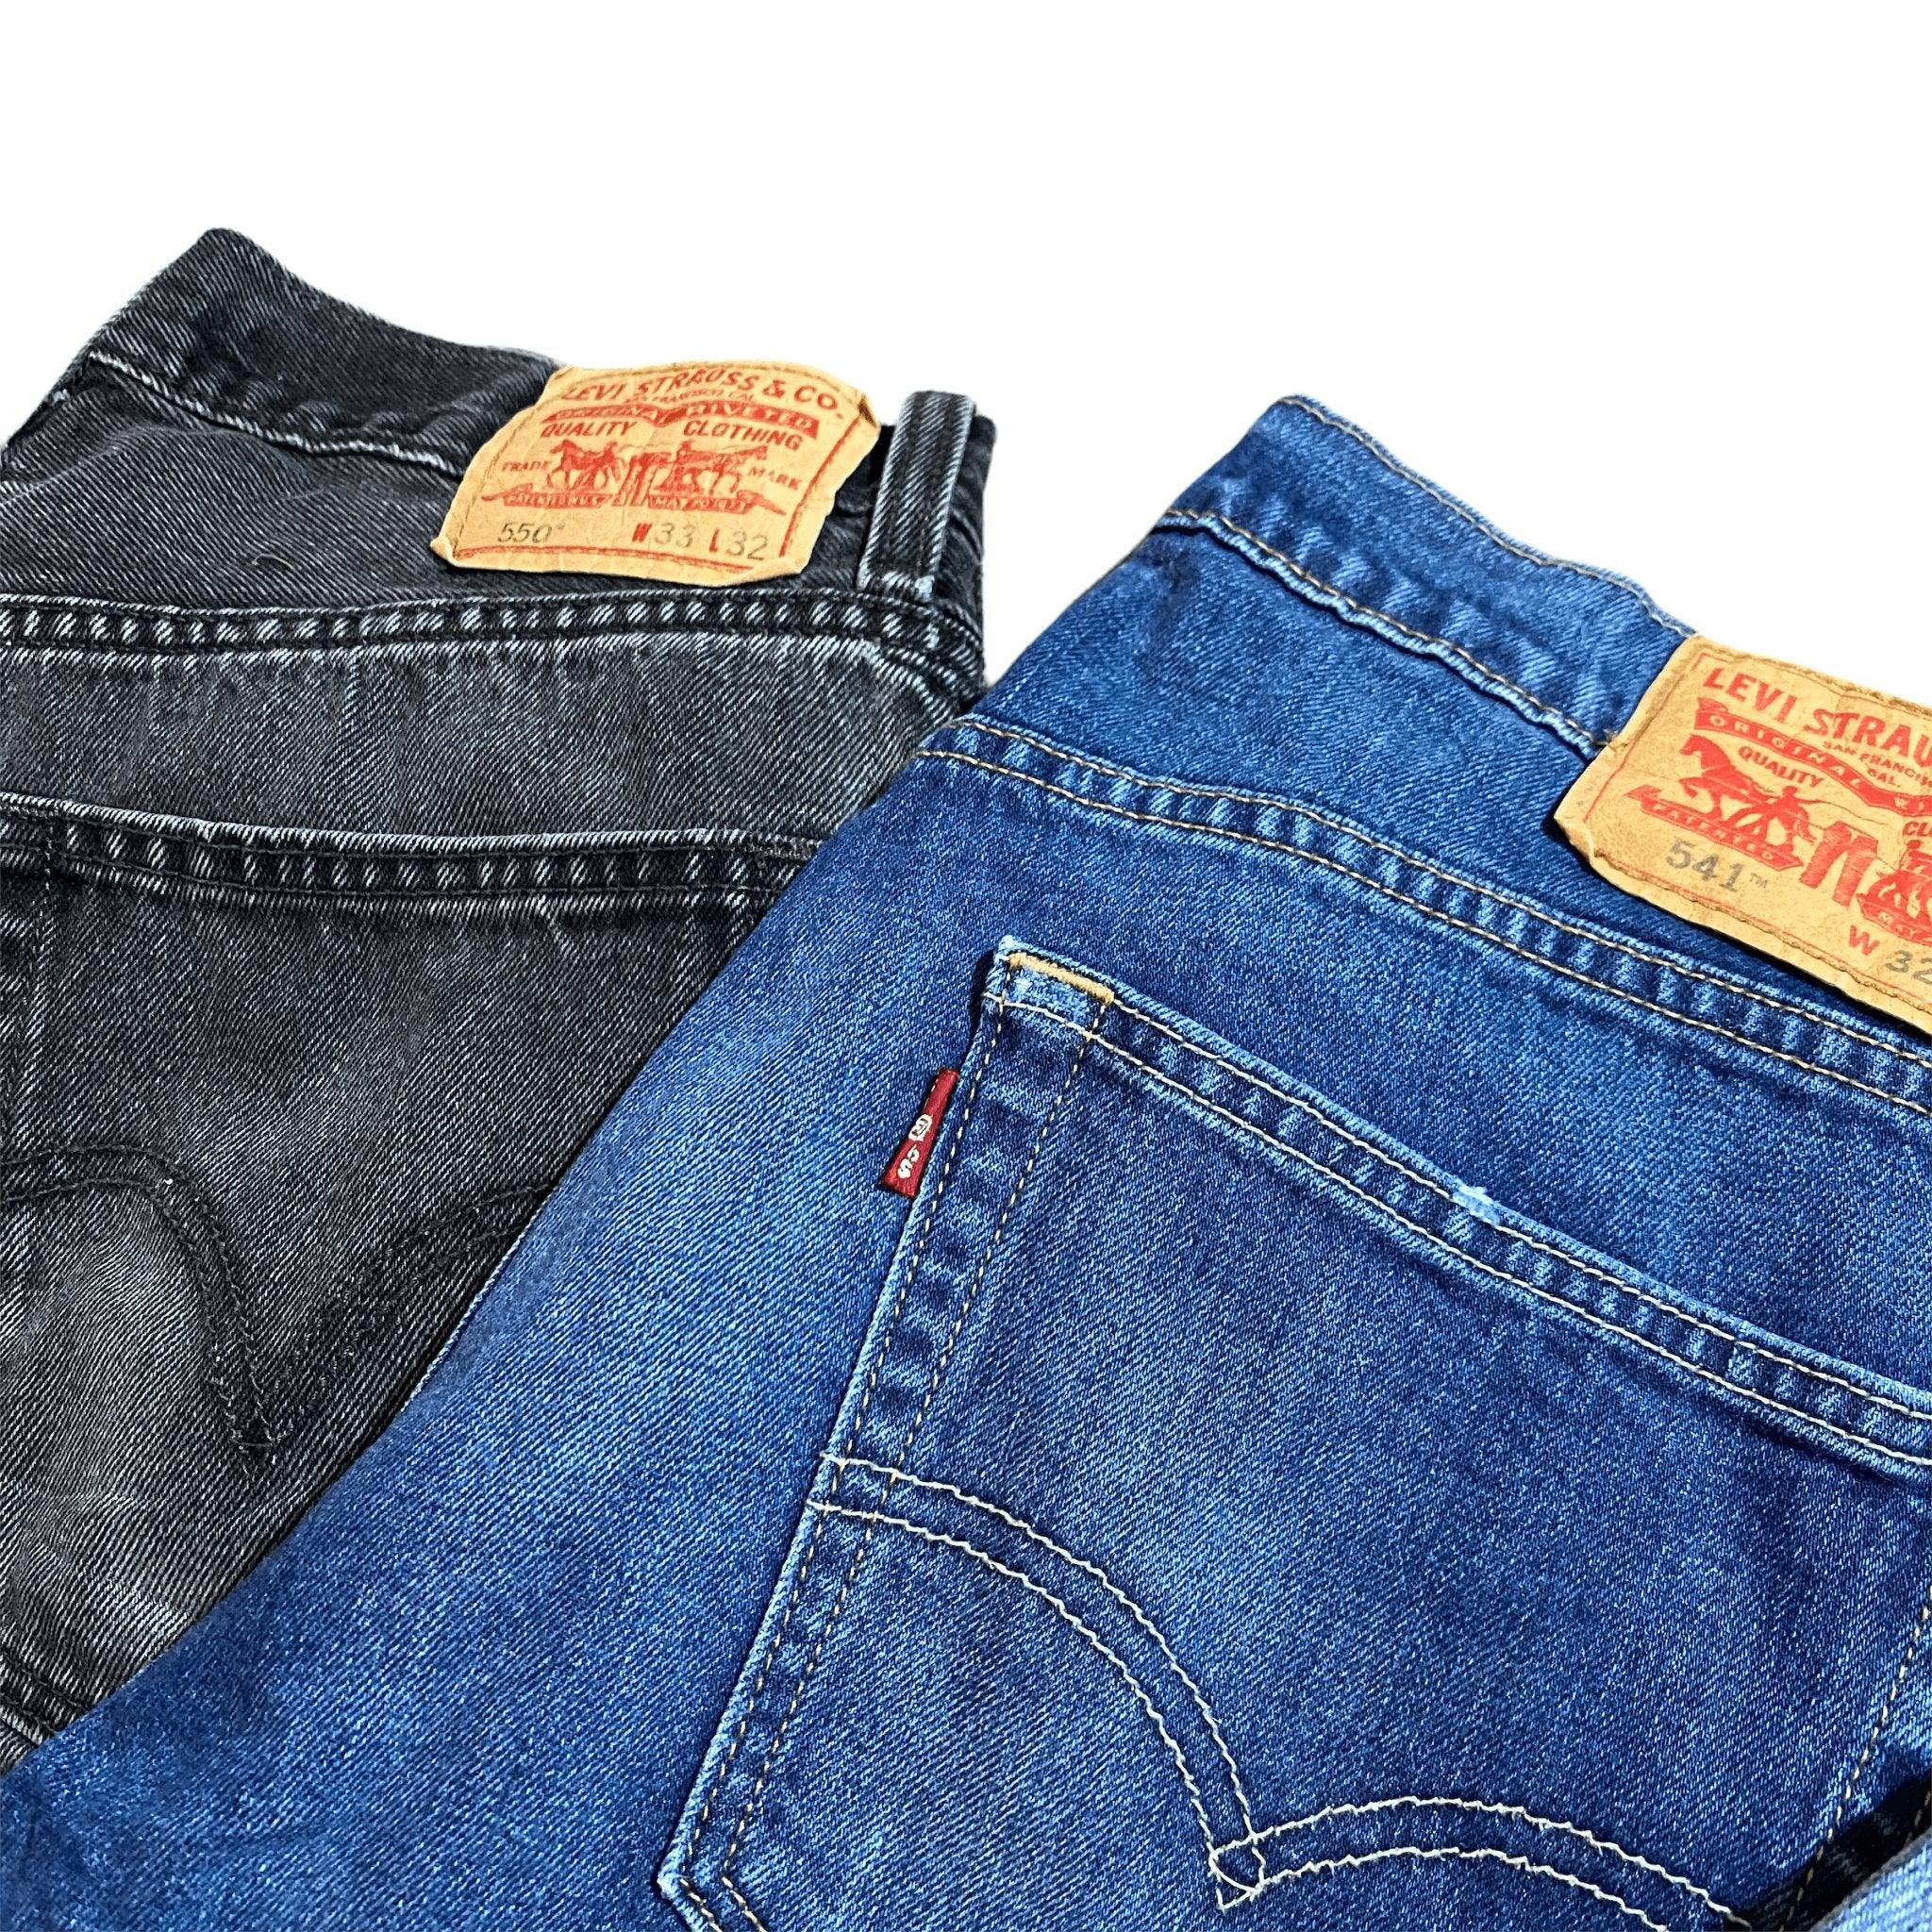 Wholesale Levis Jeans - 501 505 511